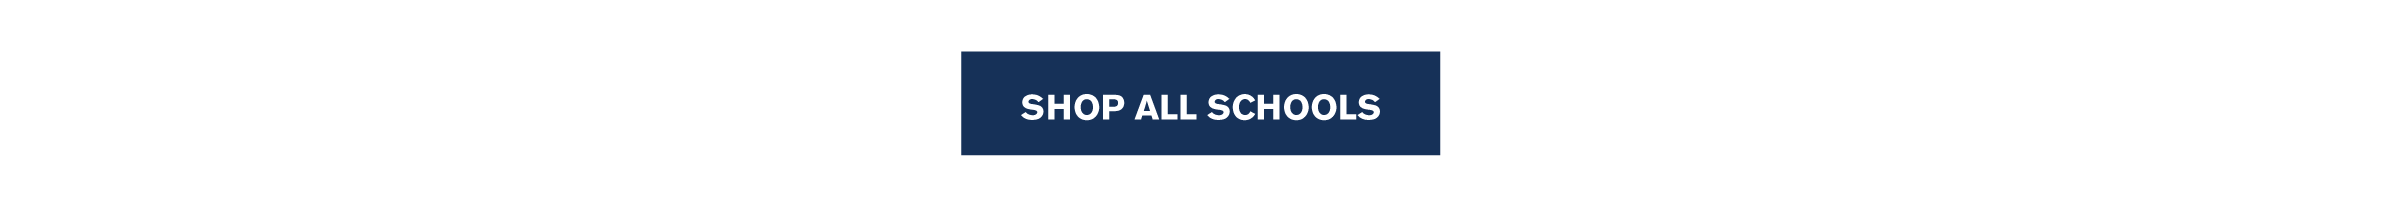 Shop All Schools